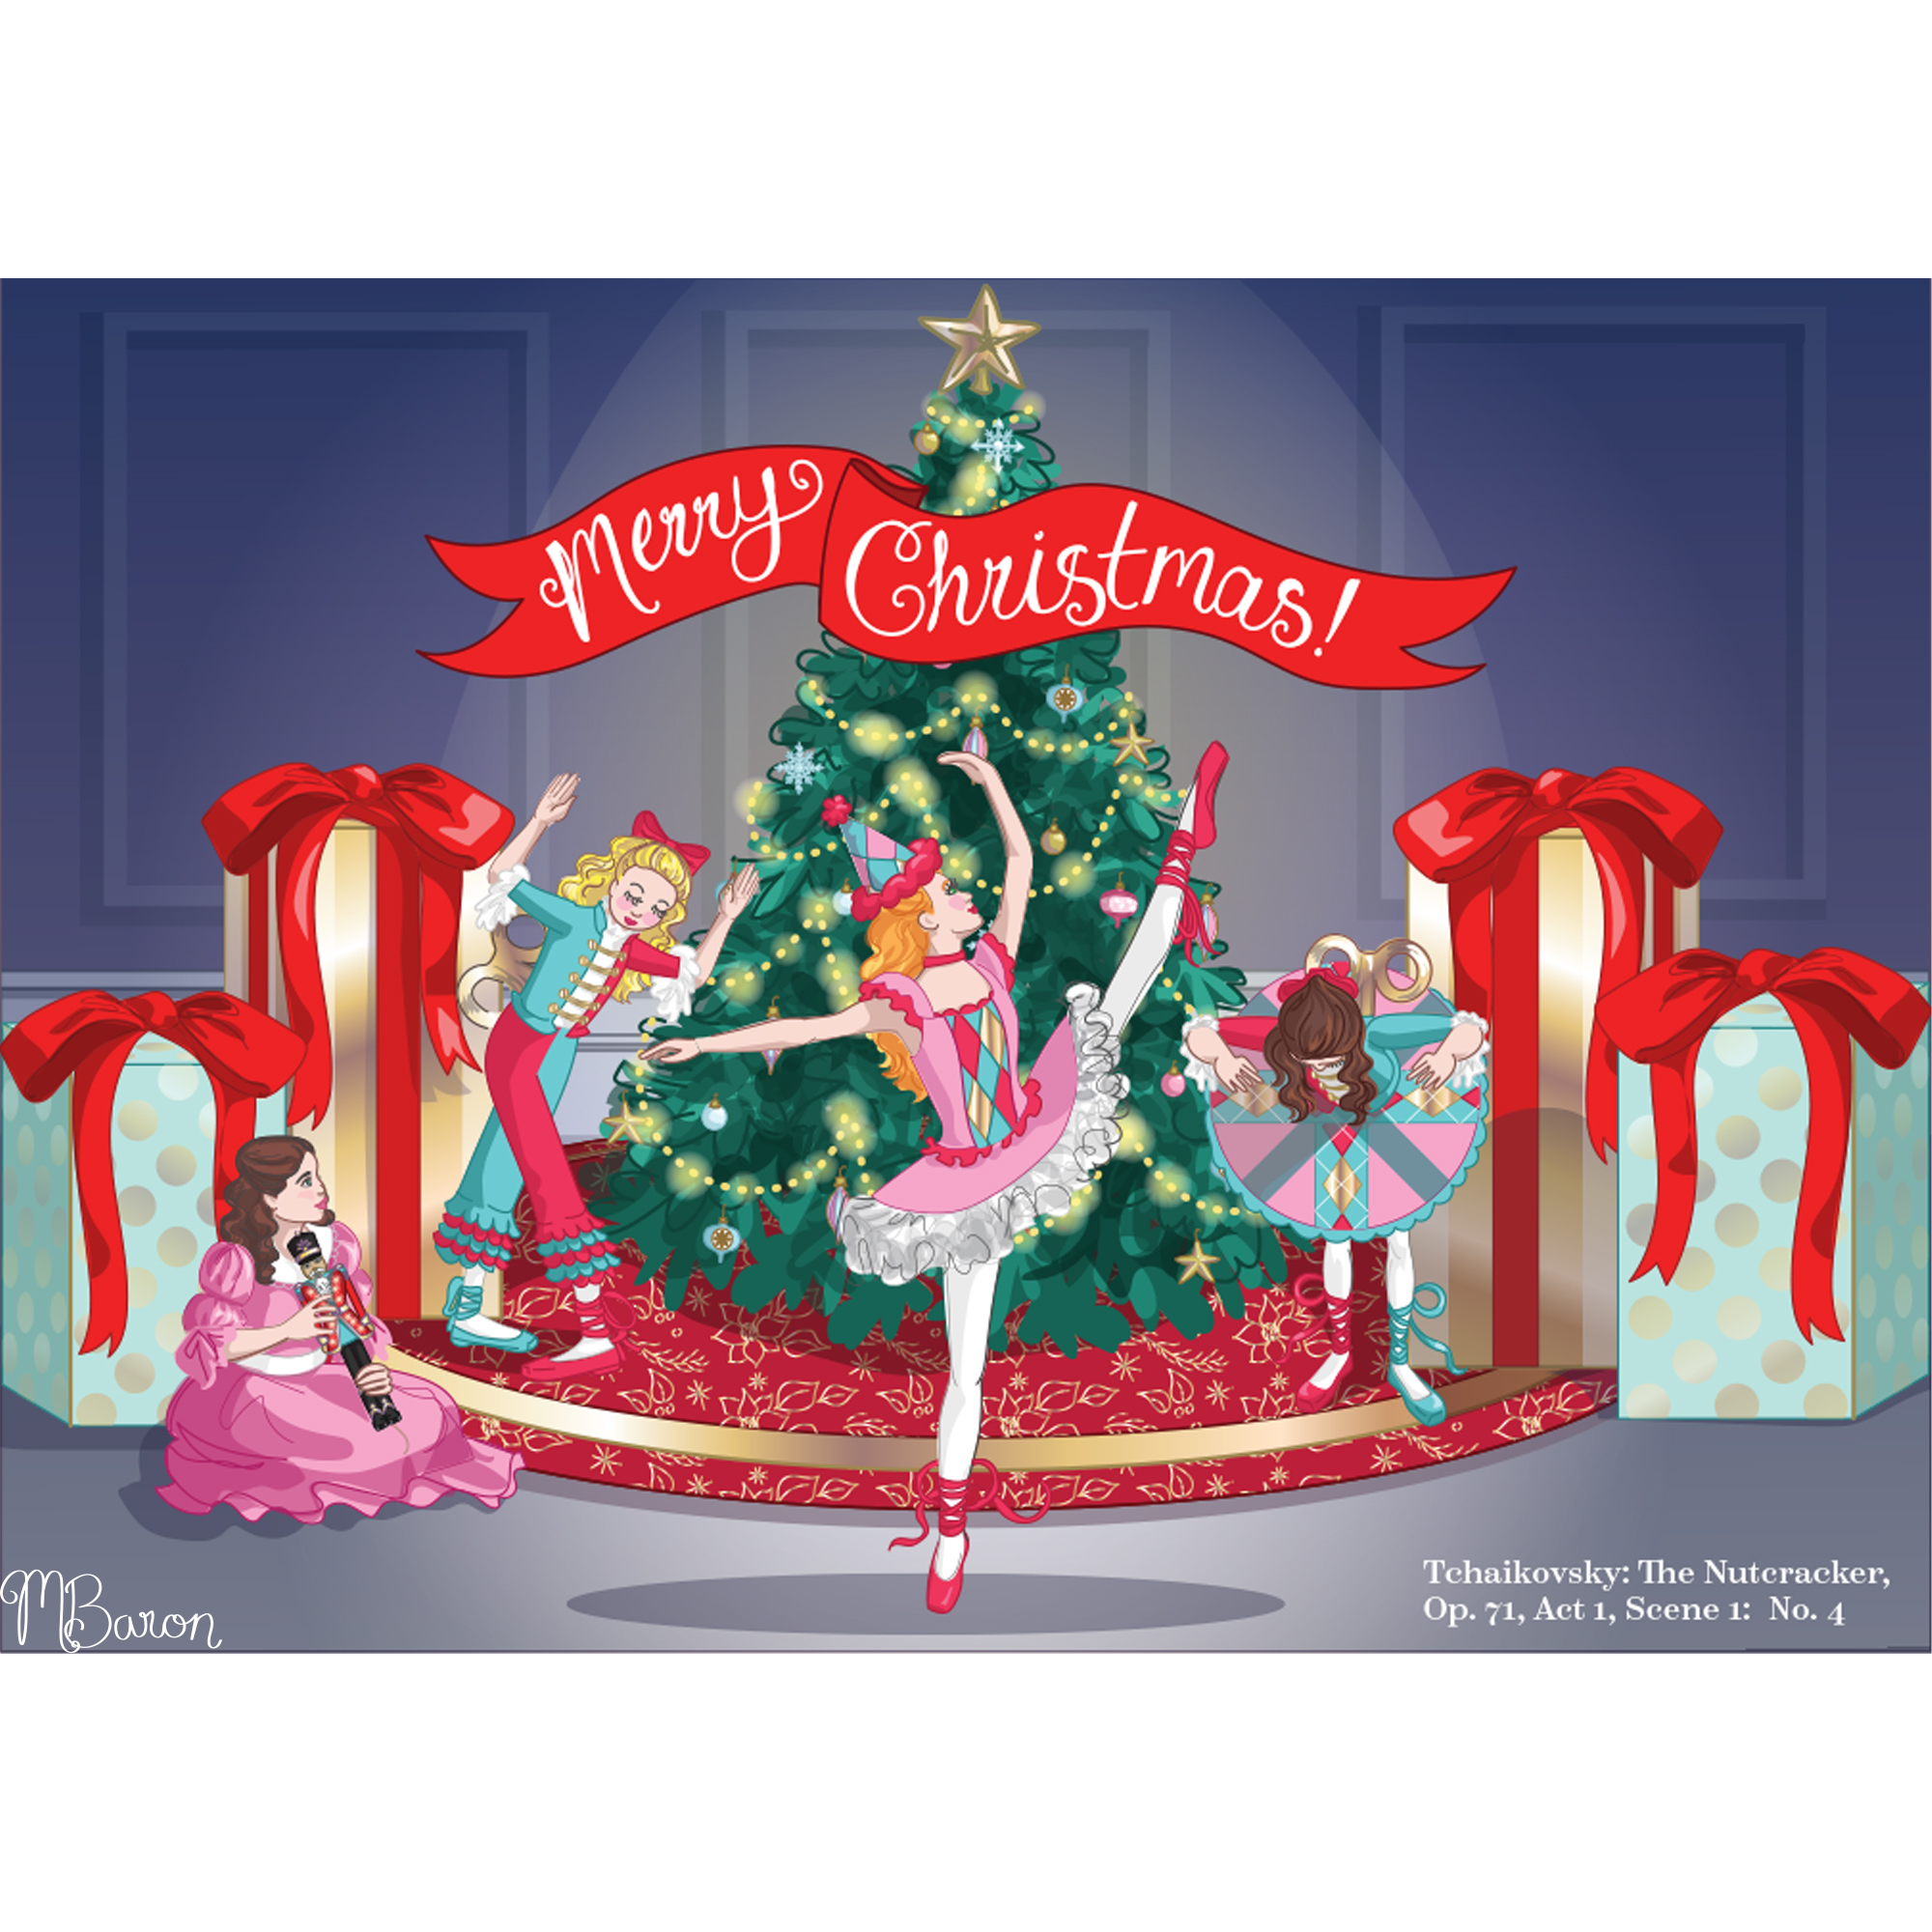 Nutcracker Themed Christmas Card